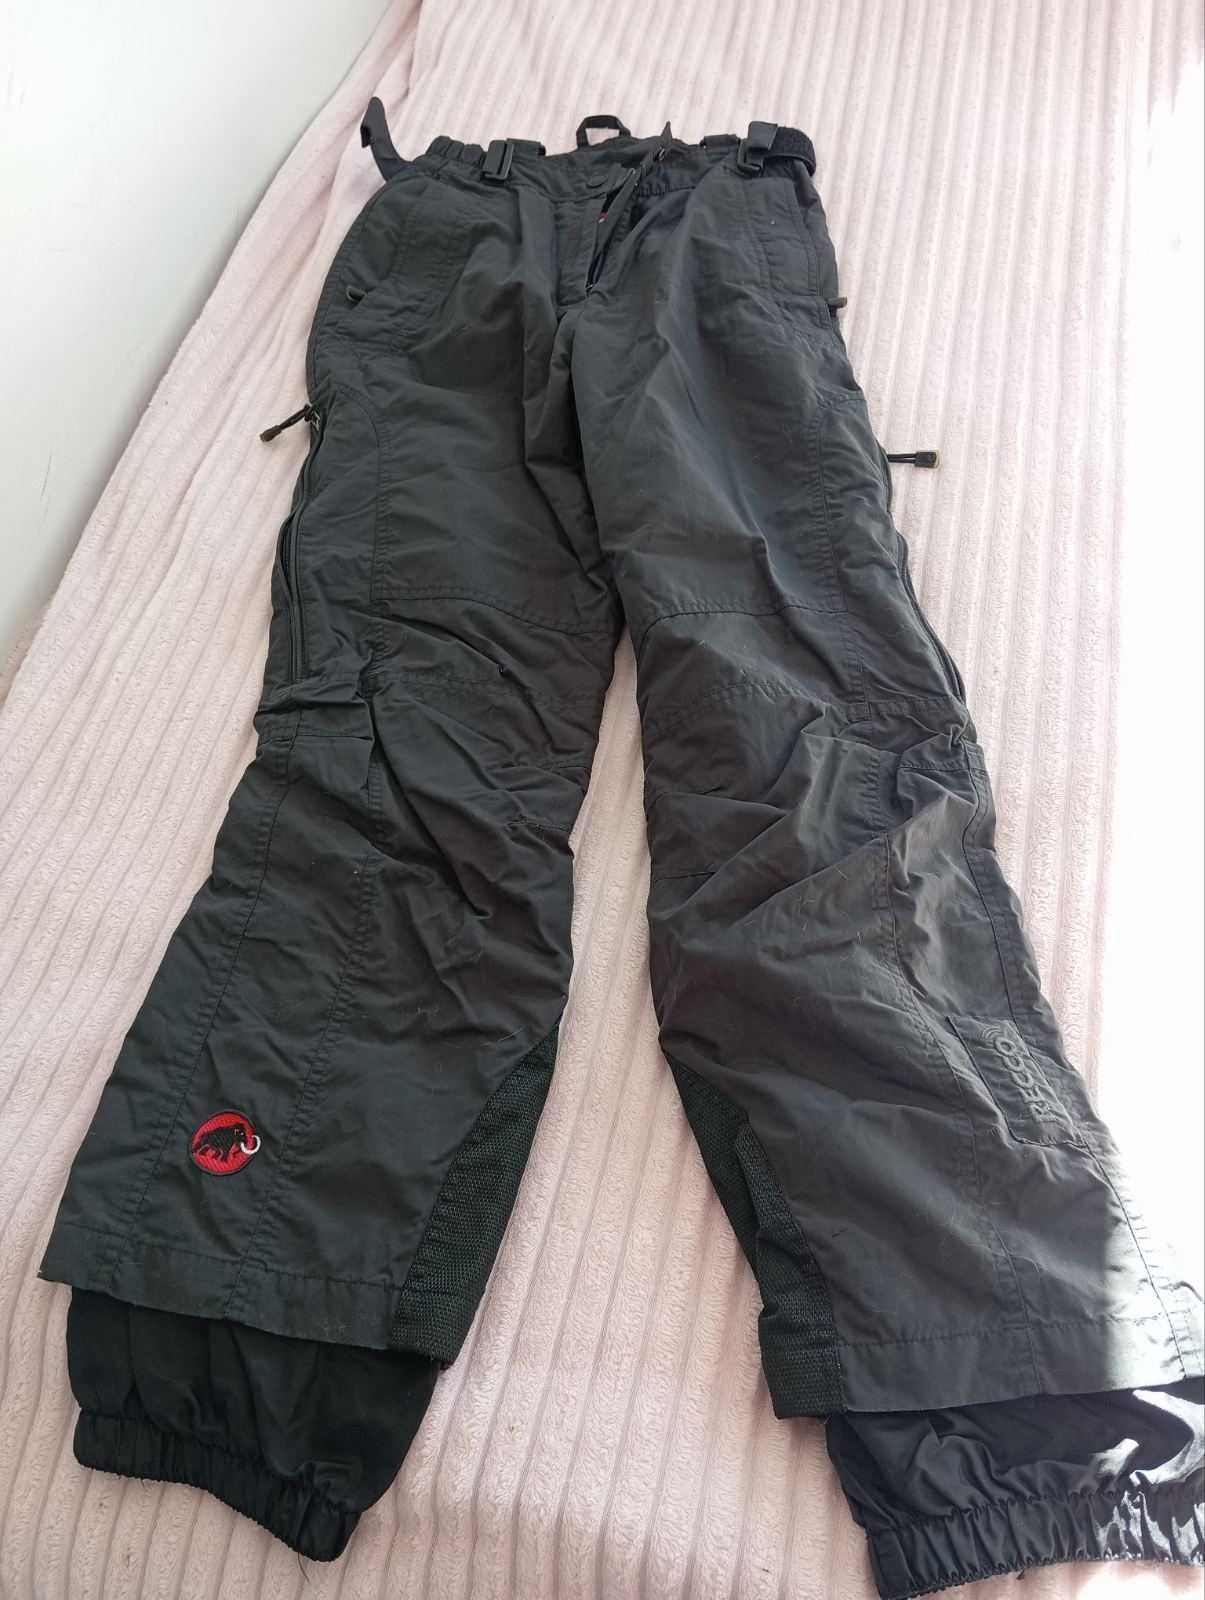 Ски панталон,тийнейджър MAMMUT, раз38,Waterproof,windproof,breathable.